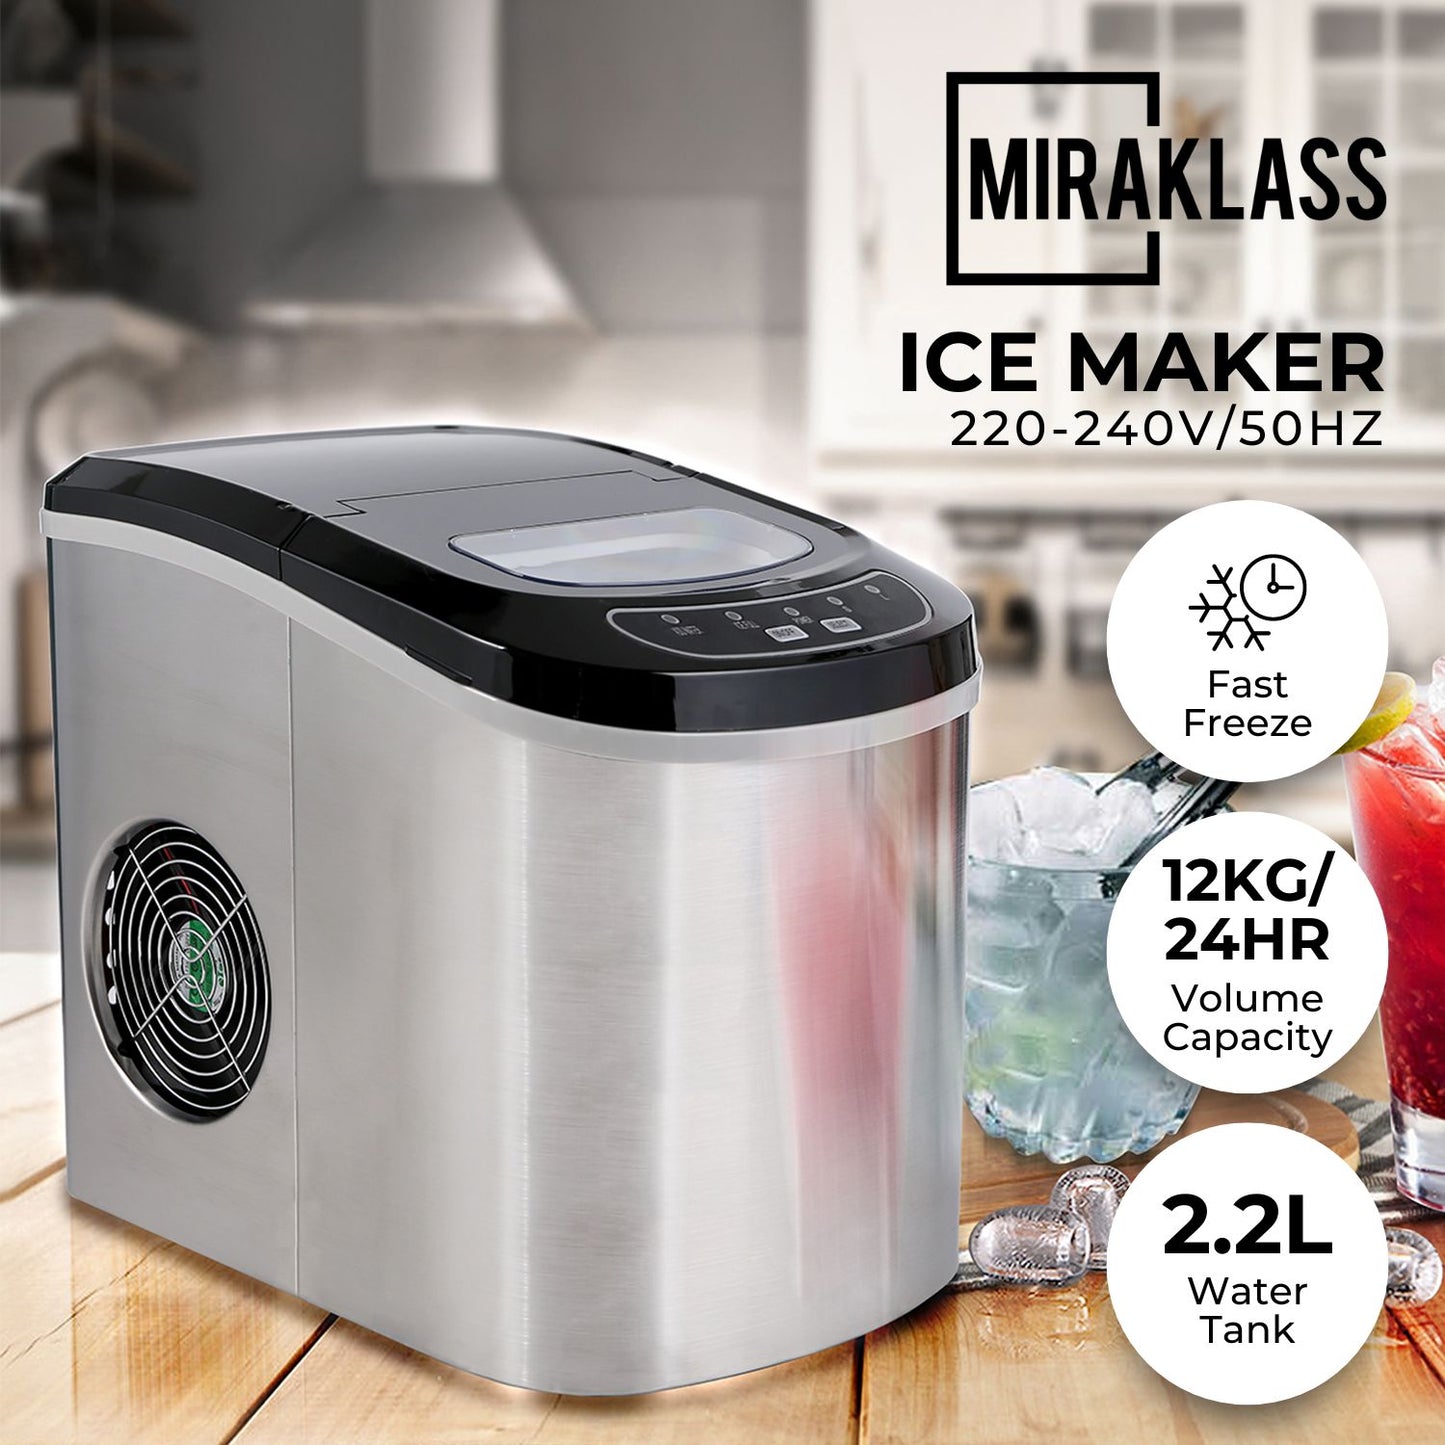 Miraklass Ice Maker Machine Stainless Steel 2.2L